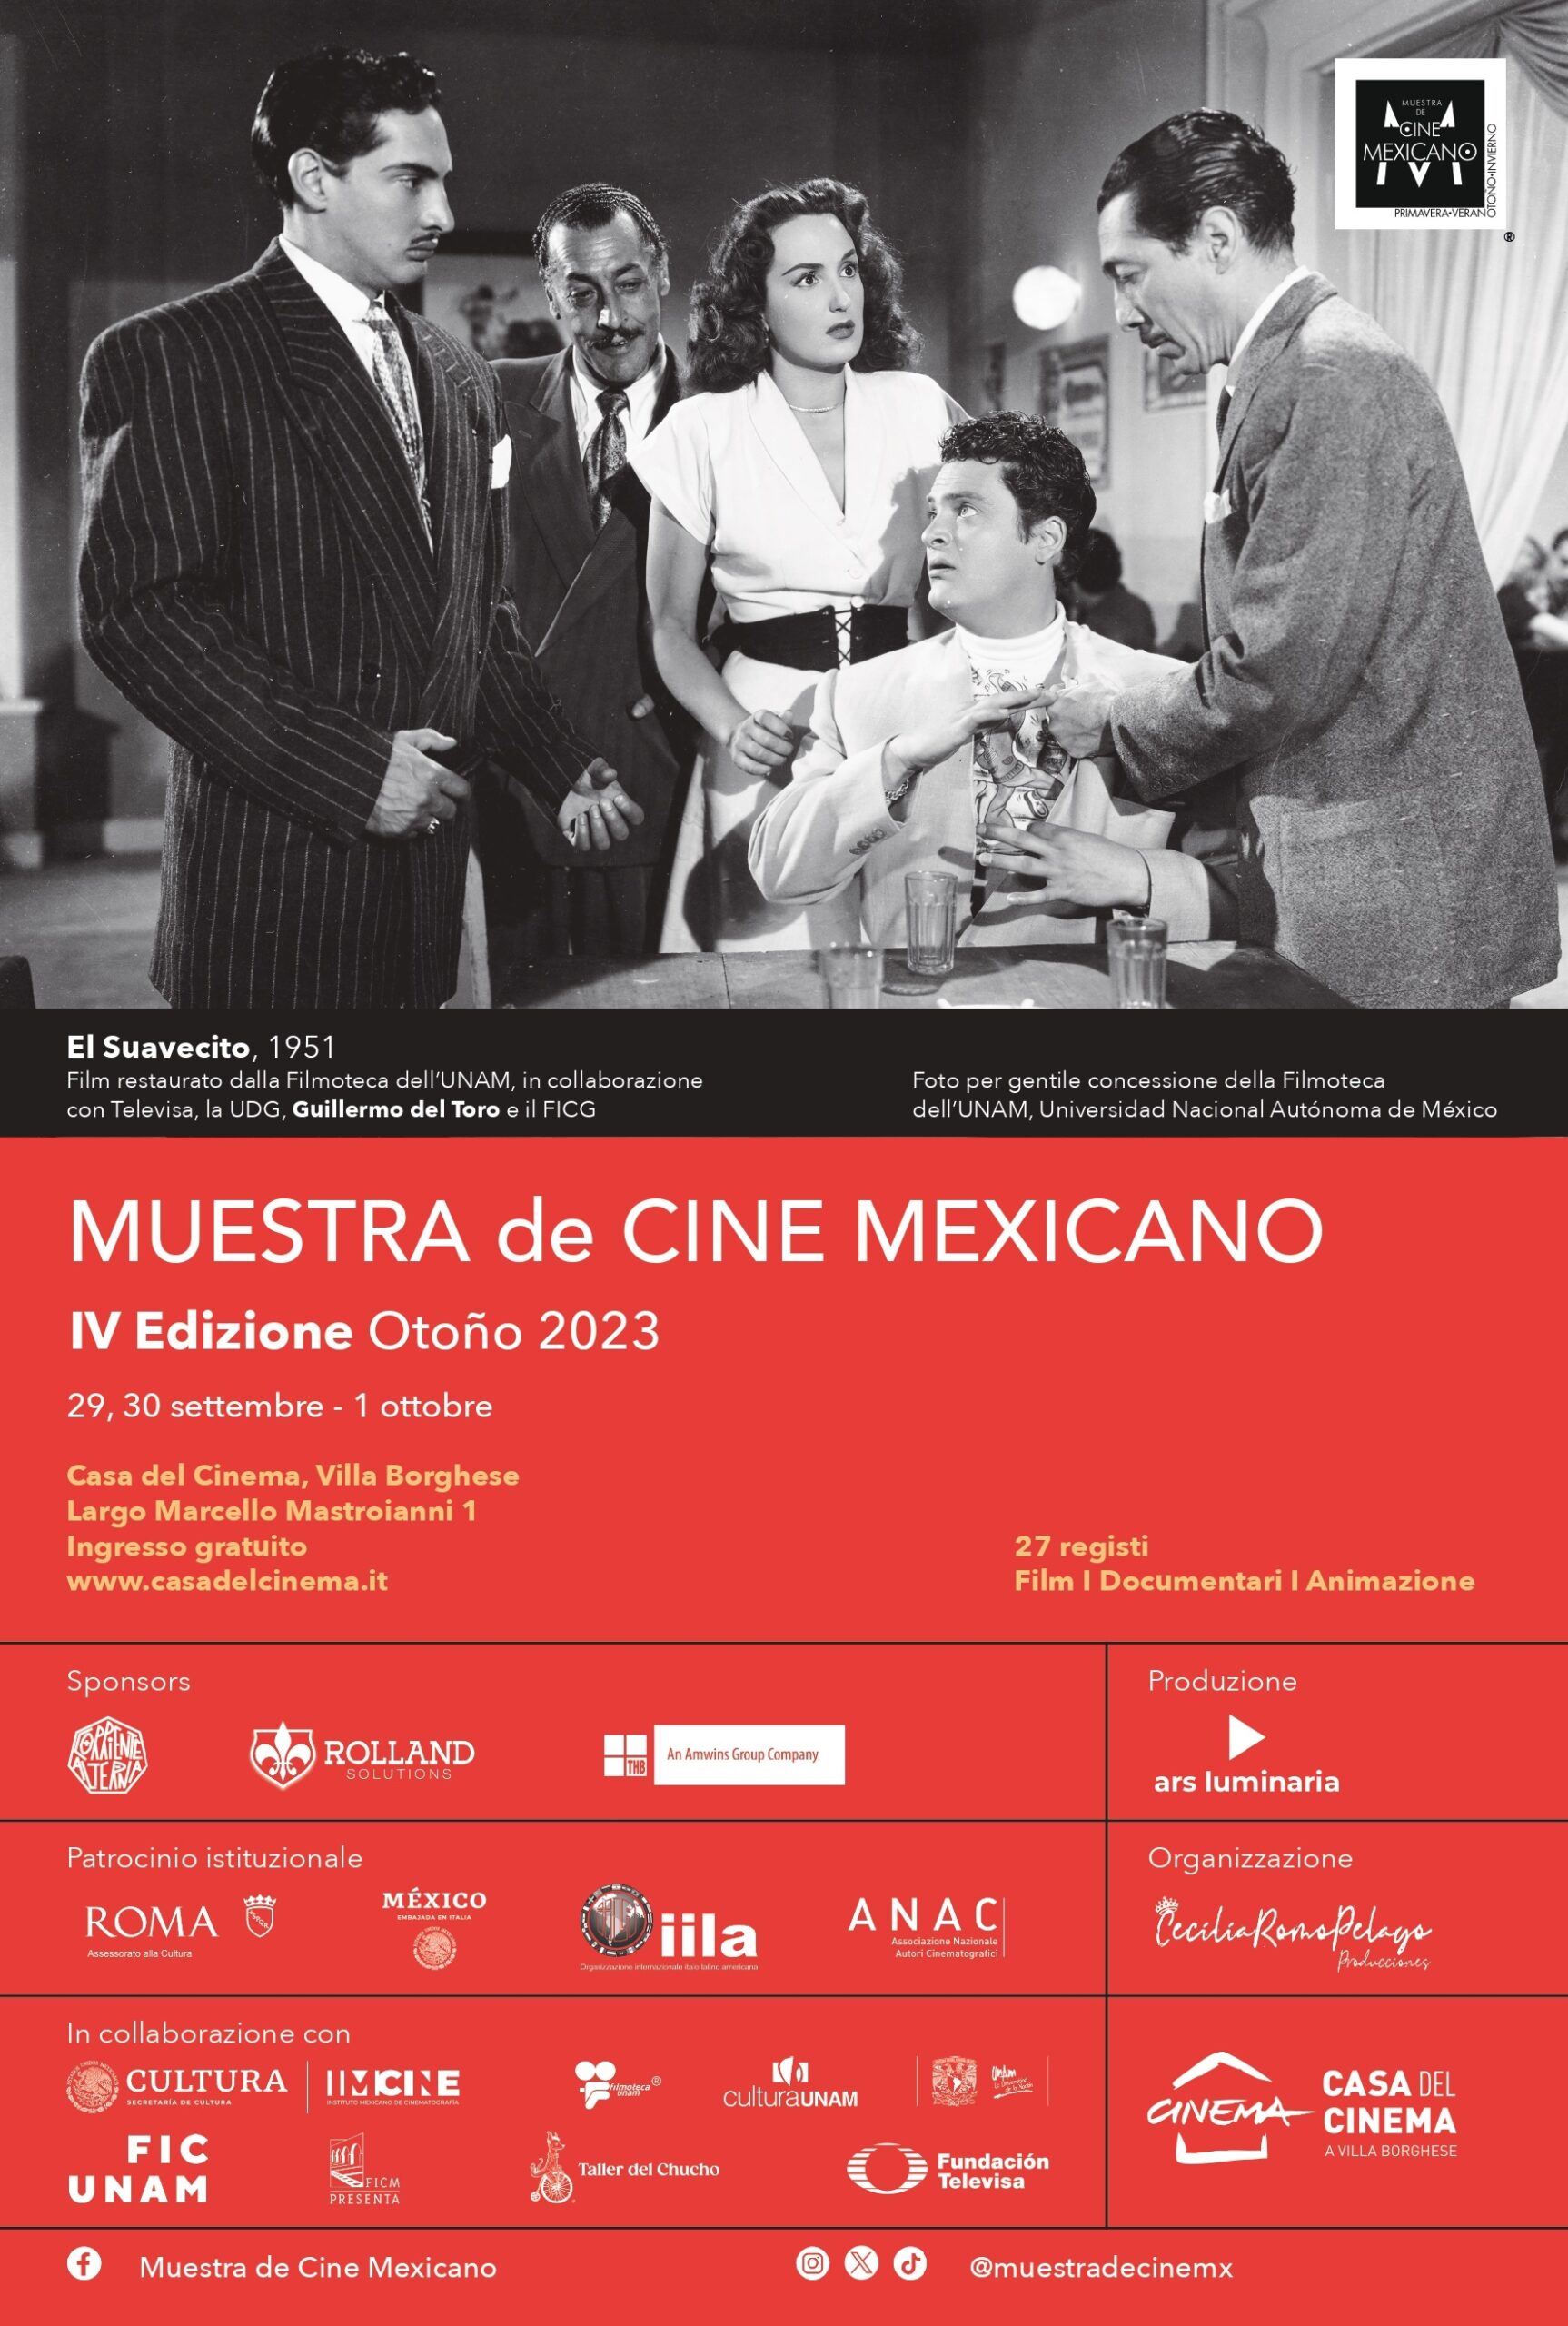 Da domani Muestra de Cine Mexicano Otono a Roma dal 29 settembre al 1 ottobre presso La Casa del Cinema